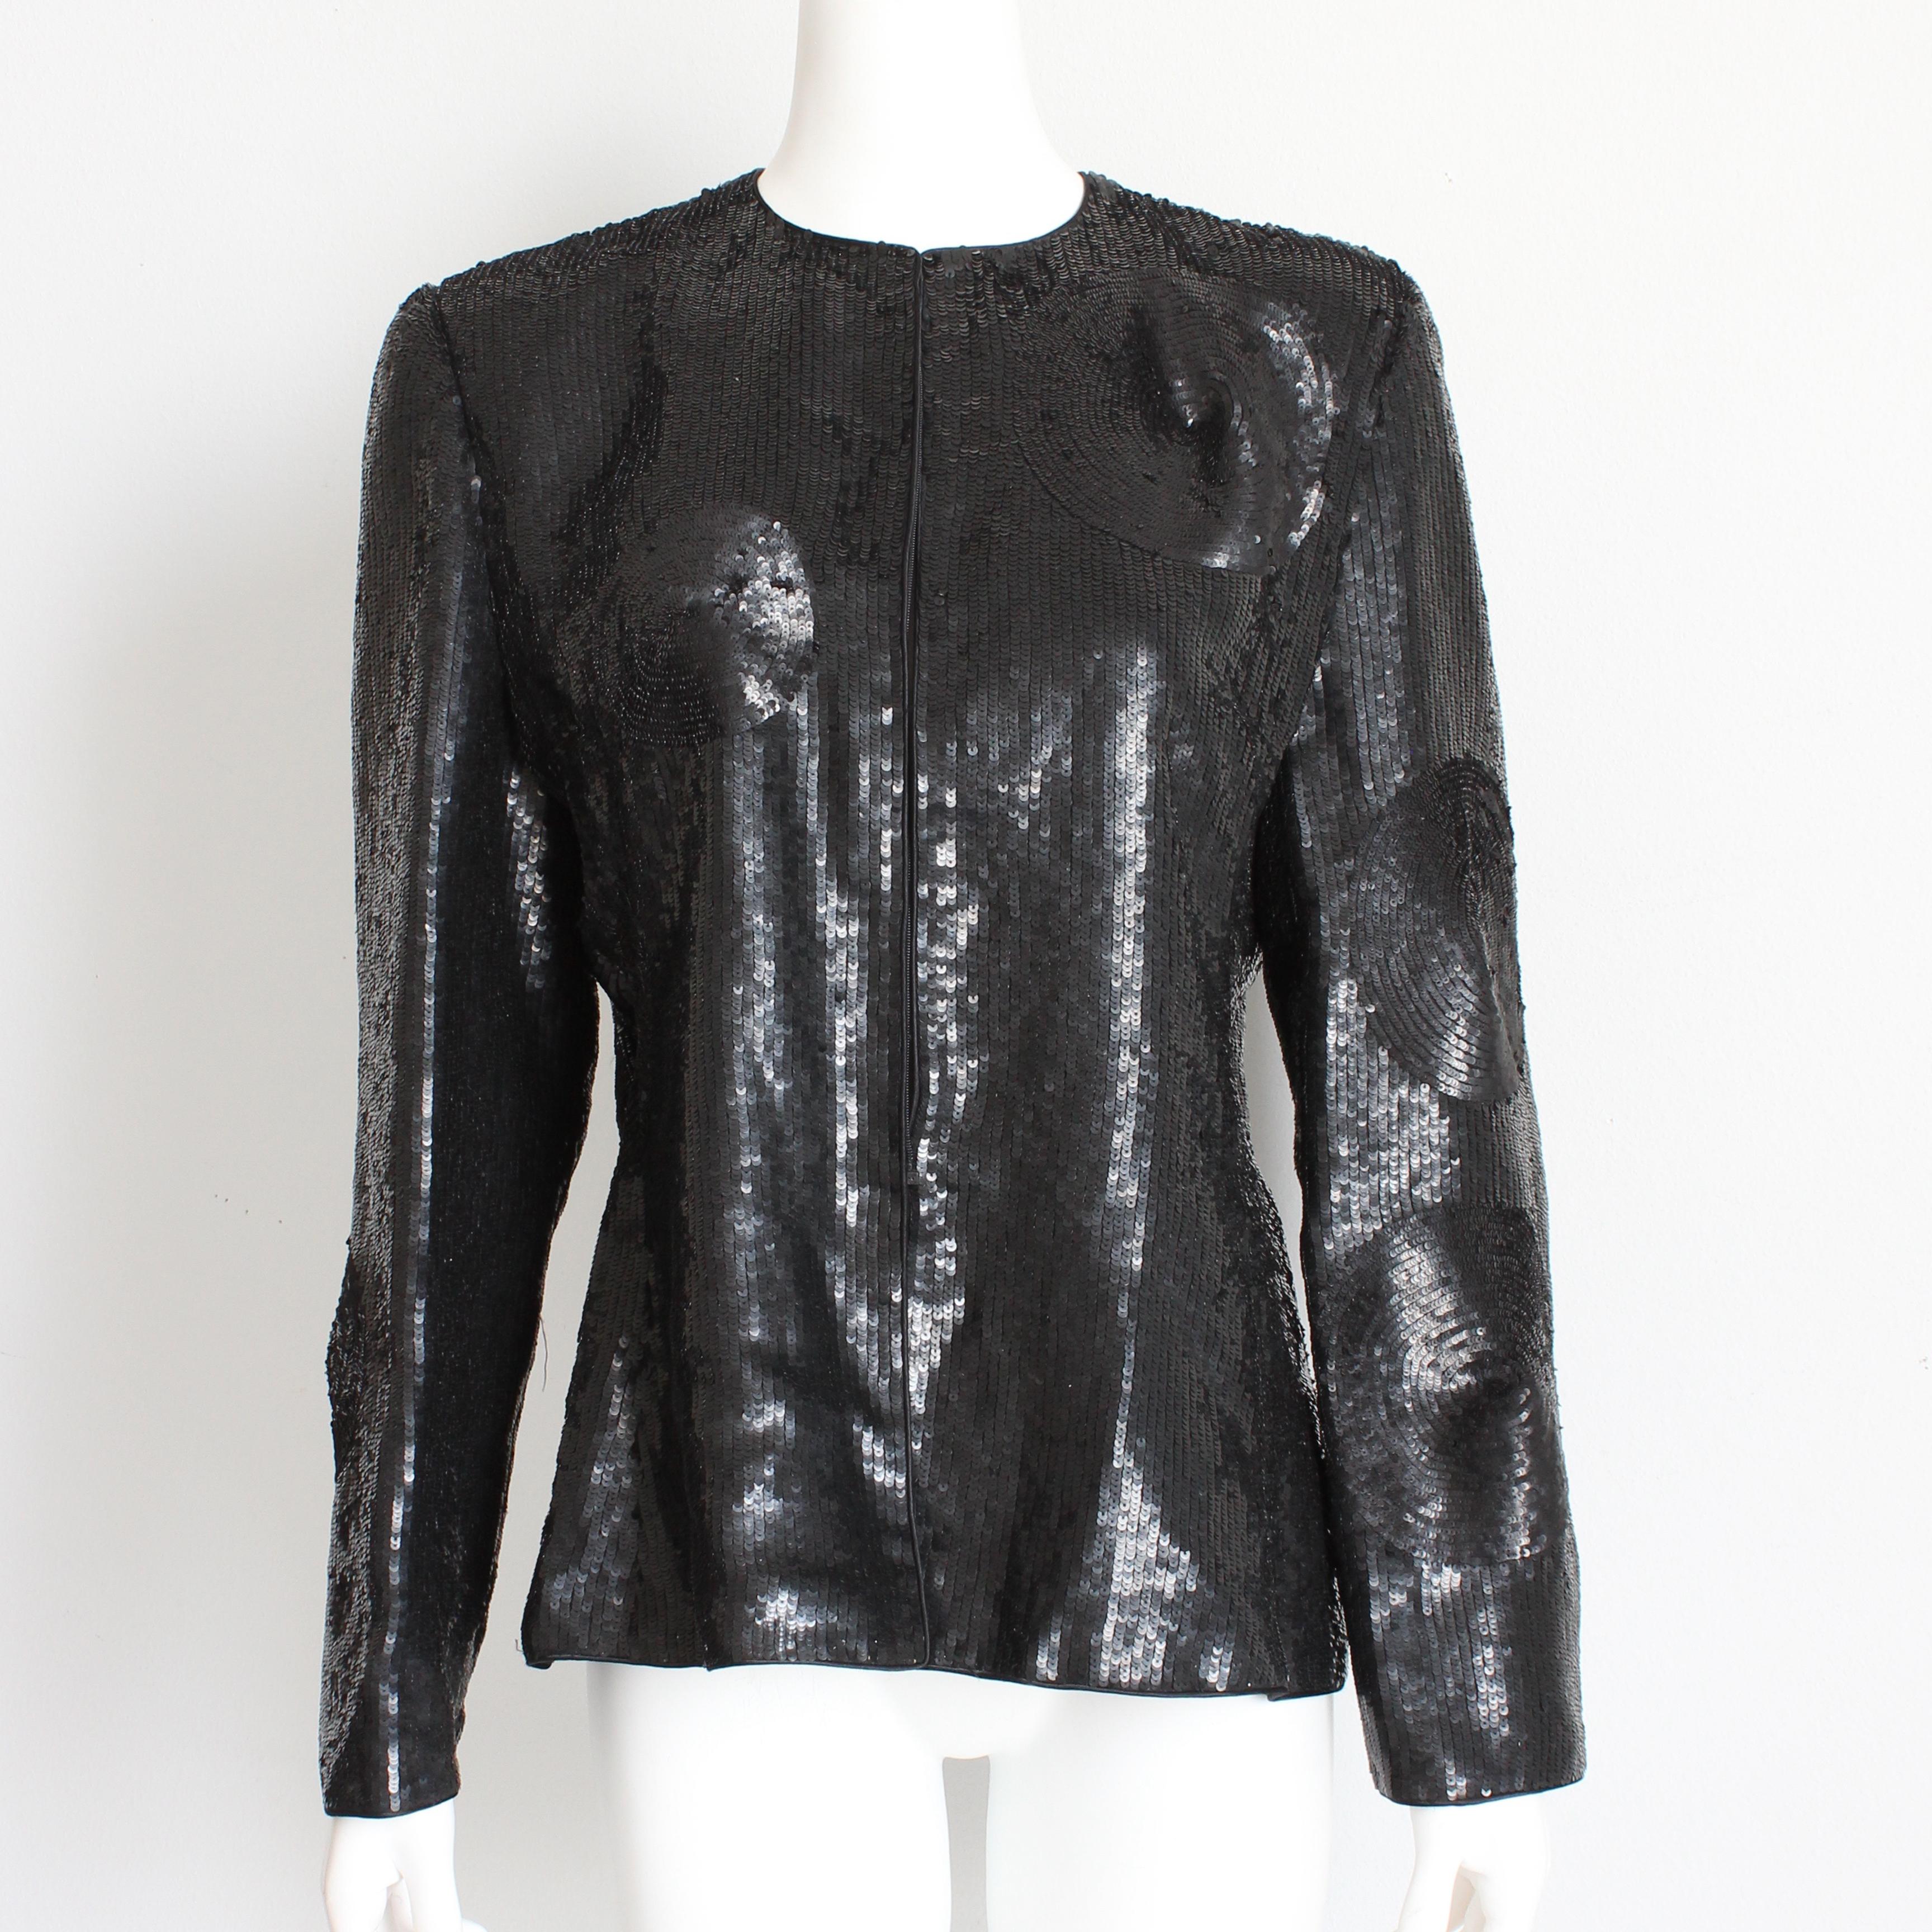 Authentique veste vintage d'occasion, fabriquée par Mary McFadden Couture, très probablement dans les années 90.  Vendue à l'origine par la boutique haut de gamme Nina Rayner de Delray Beach. Réalisée en paillettes noires avec un motif circulaire